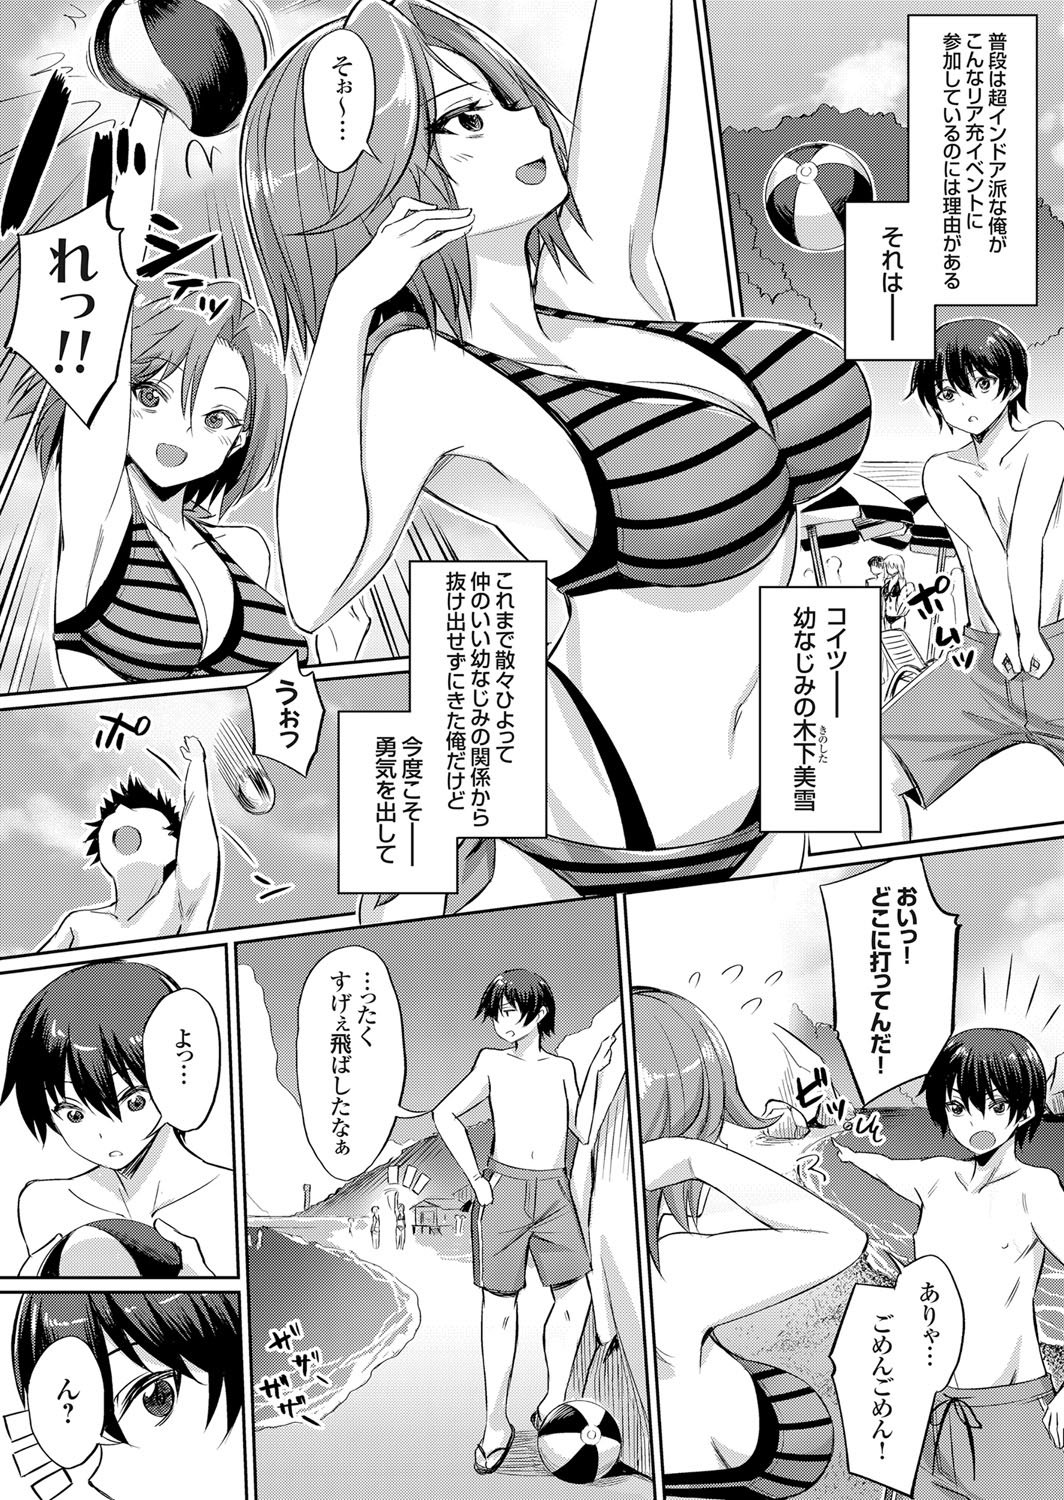 [yasu] Ibitsu na Kankei ~Manatsu no YariCir Rankou Gasshuku~ - Distorted relationship page 4 full